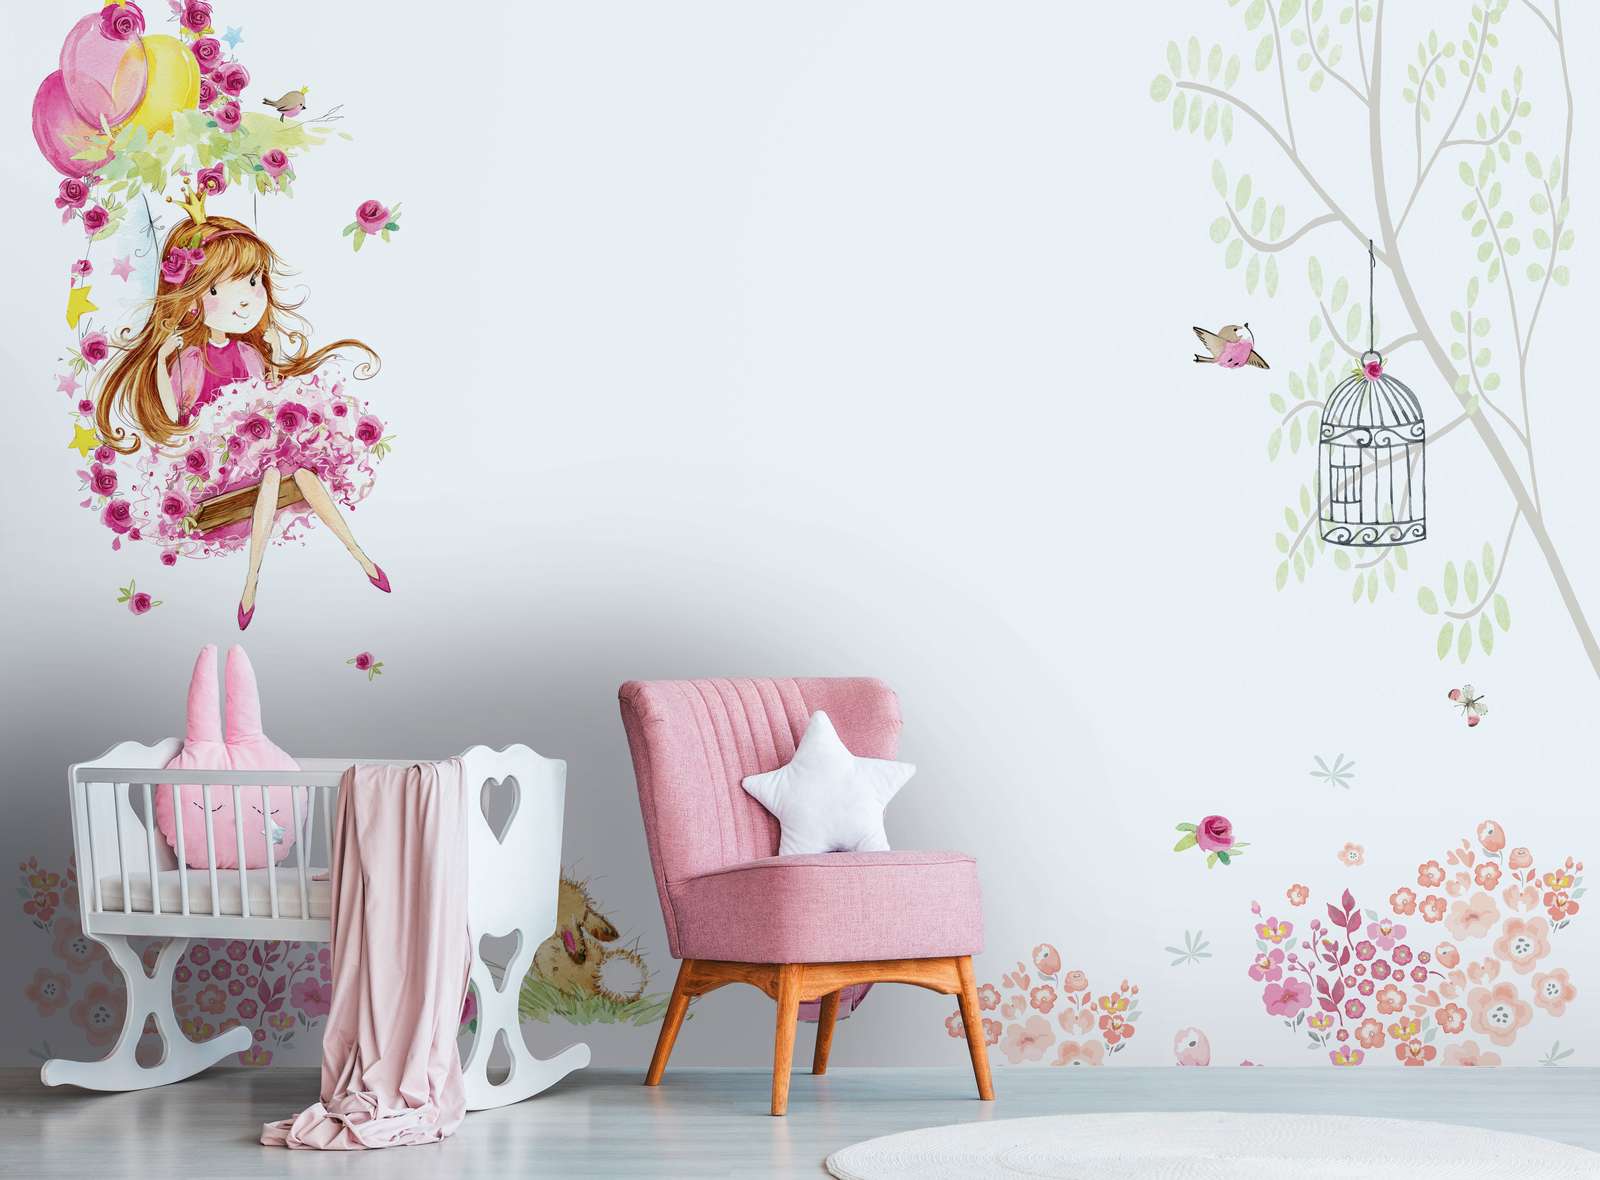             Papier peint panoramique chambre d'enfant avec princesse sur la balançoire et animaux - rose, blanc, vert
        